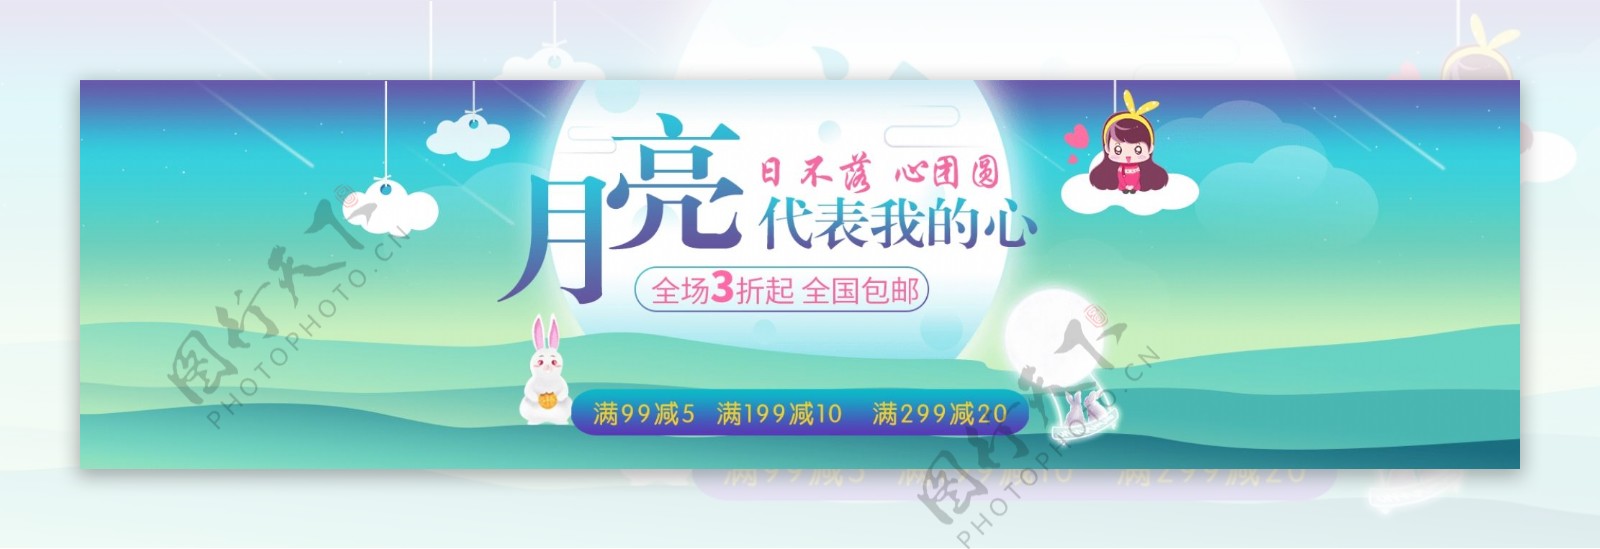 淘宝天猫中秋佳节促销海报